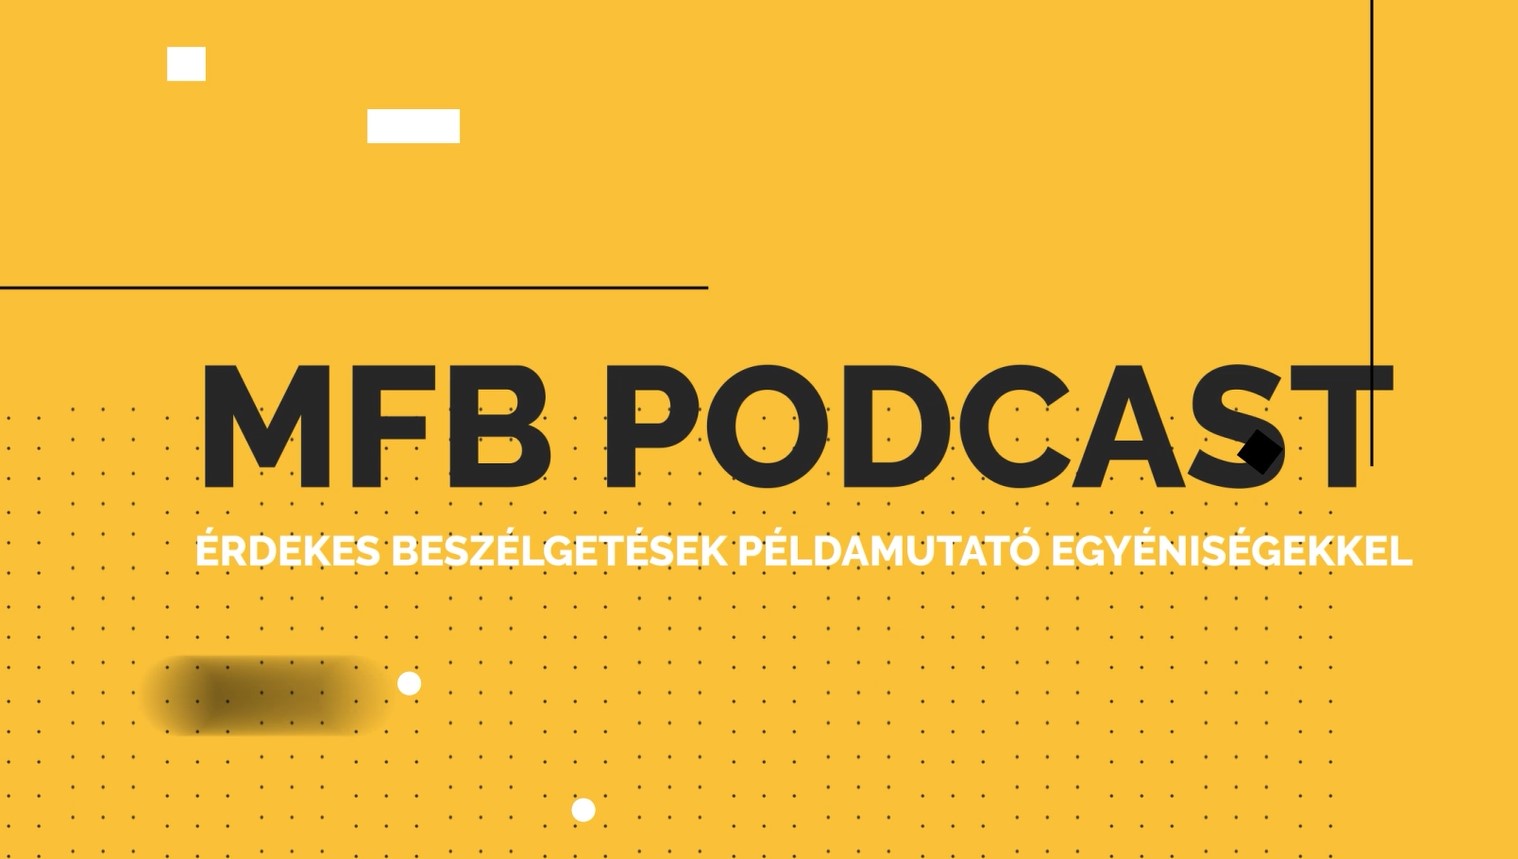 MFB Podcast - Beszélgetés Dr. Mátyás Ferenc neurobiológus agykutatóval az alvászavarról és az azt kiváltó okokról